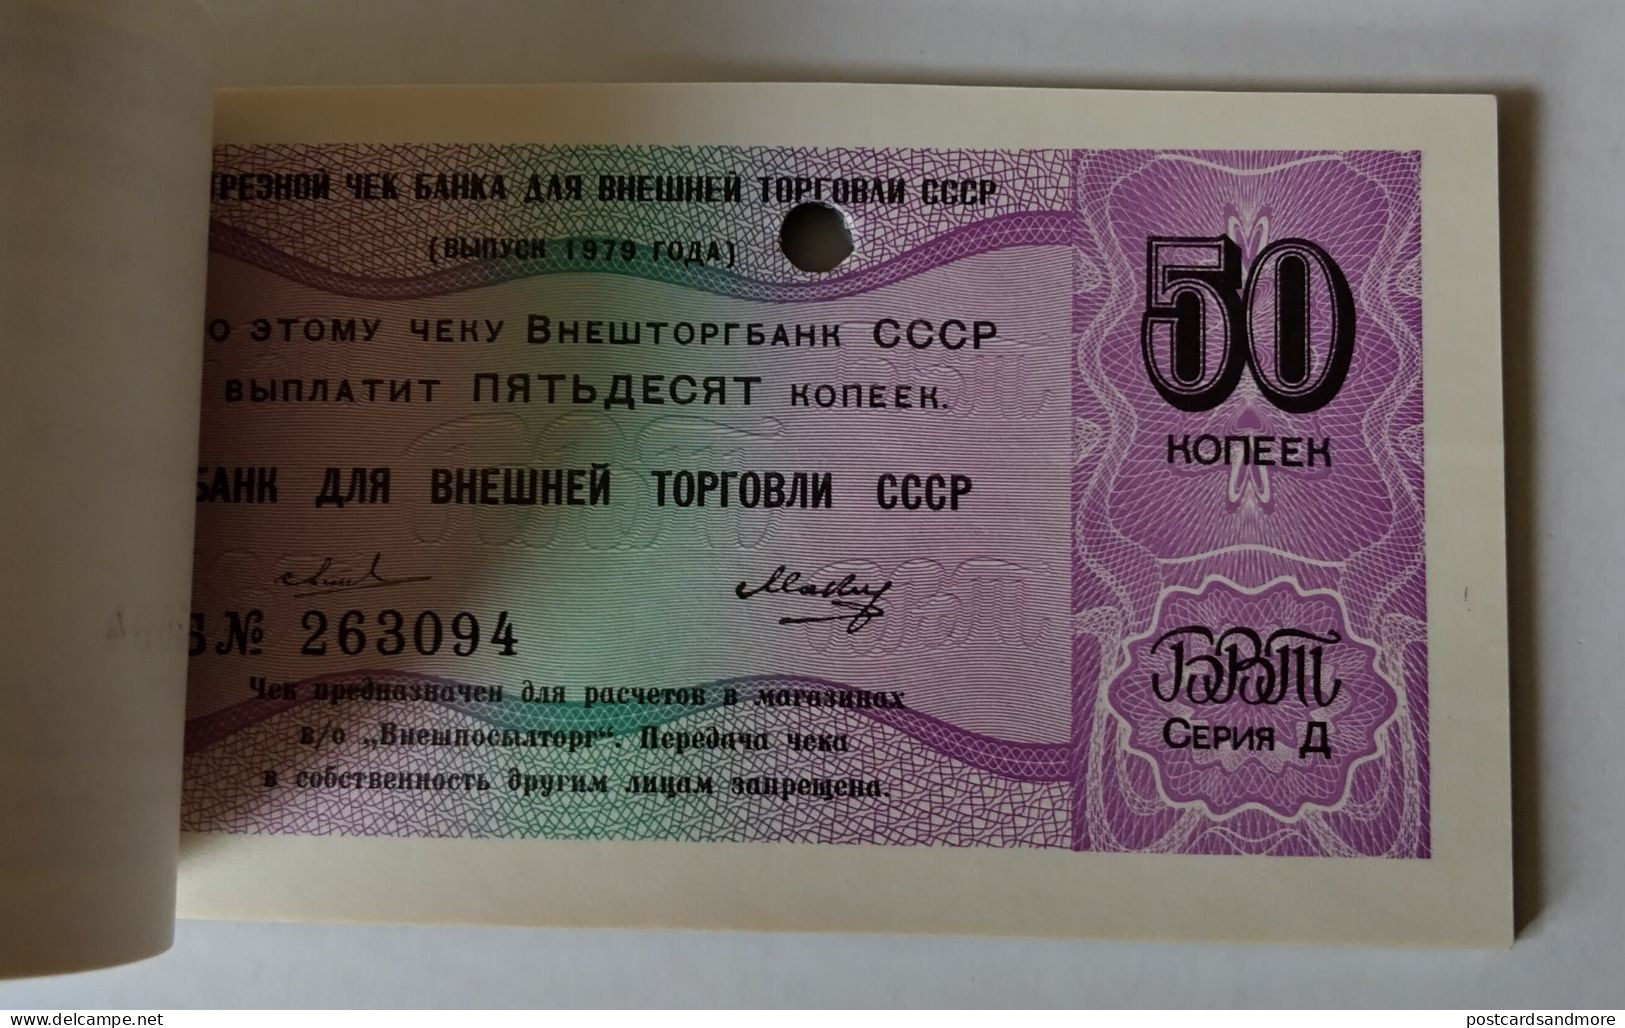 Russia Vneshtorgbank complete checkbook 36 checks 1 Kopek - 5 Rubles 1979 Series D Diplomatic checks Pick FX146d-FX154d